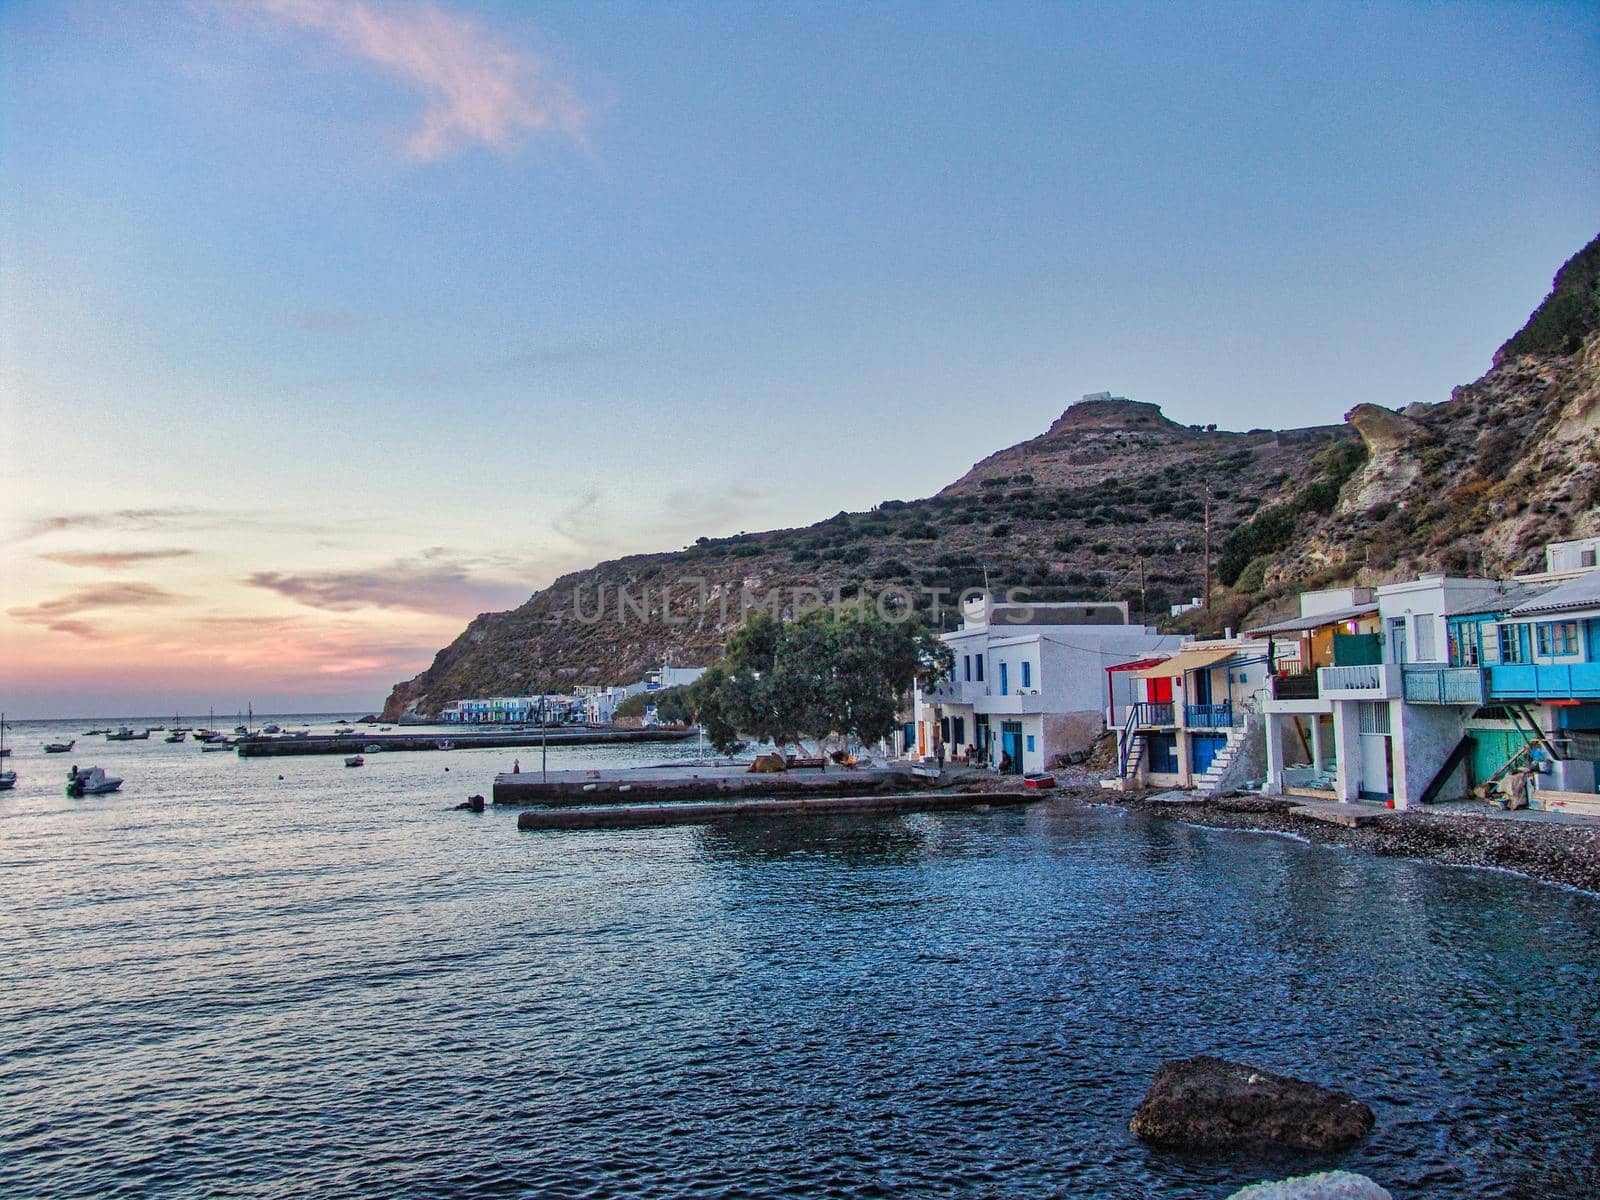 Klima village in Milos island, Greece by feelmytravel